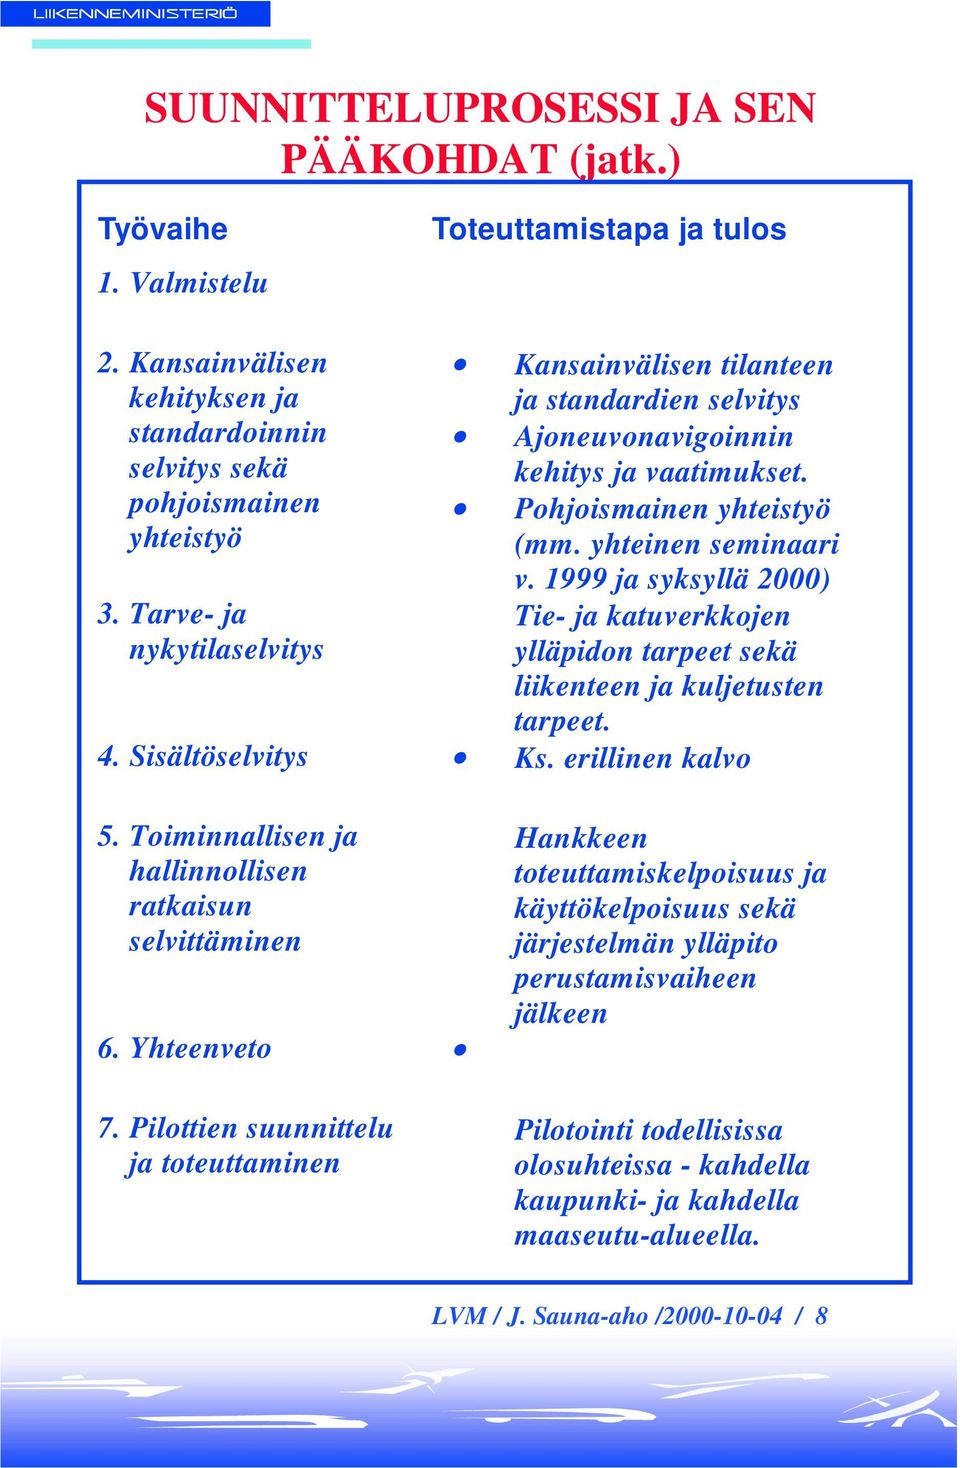 1999 ja syksyllä 2000) Tie- ja katuverkkojen ylläpidon tarpeet sekä liikenteen ja kuljetusten tarpeet. 4. Sisältöselvitys Ks. erillinen kalvo 5.